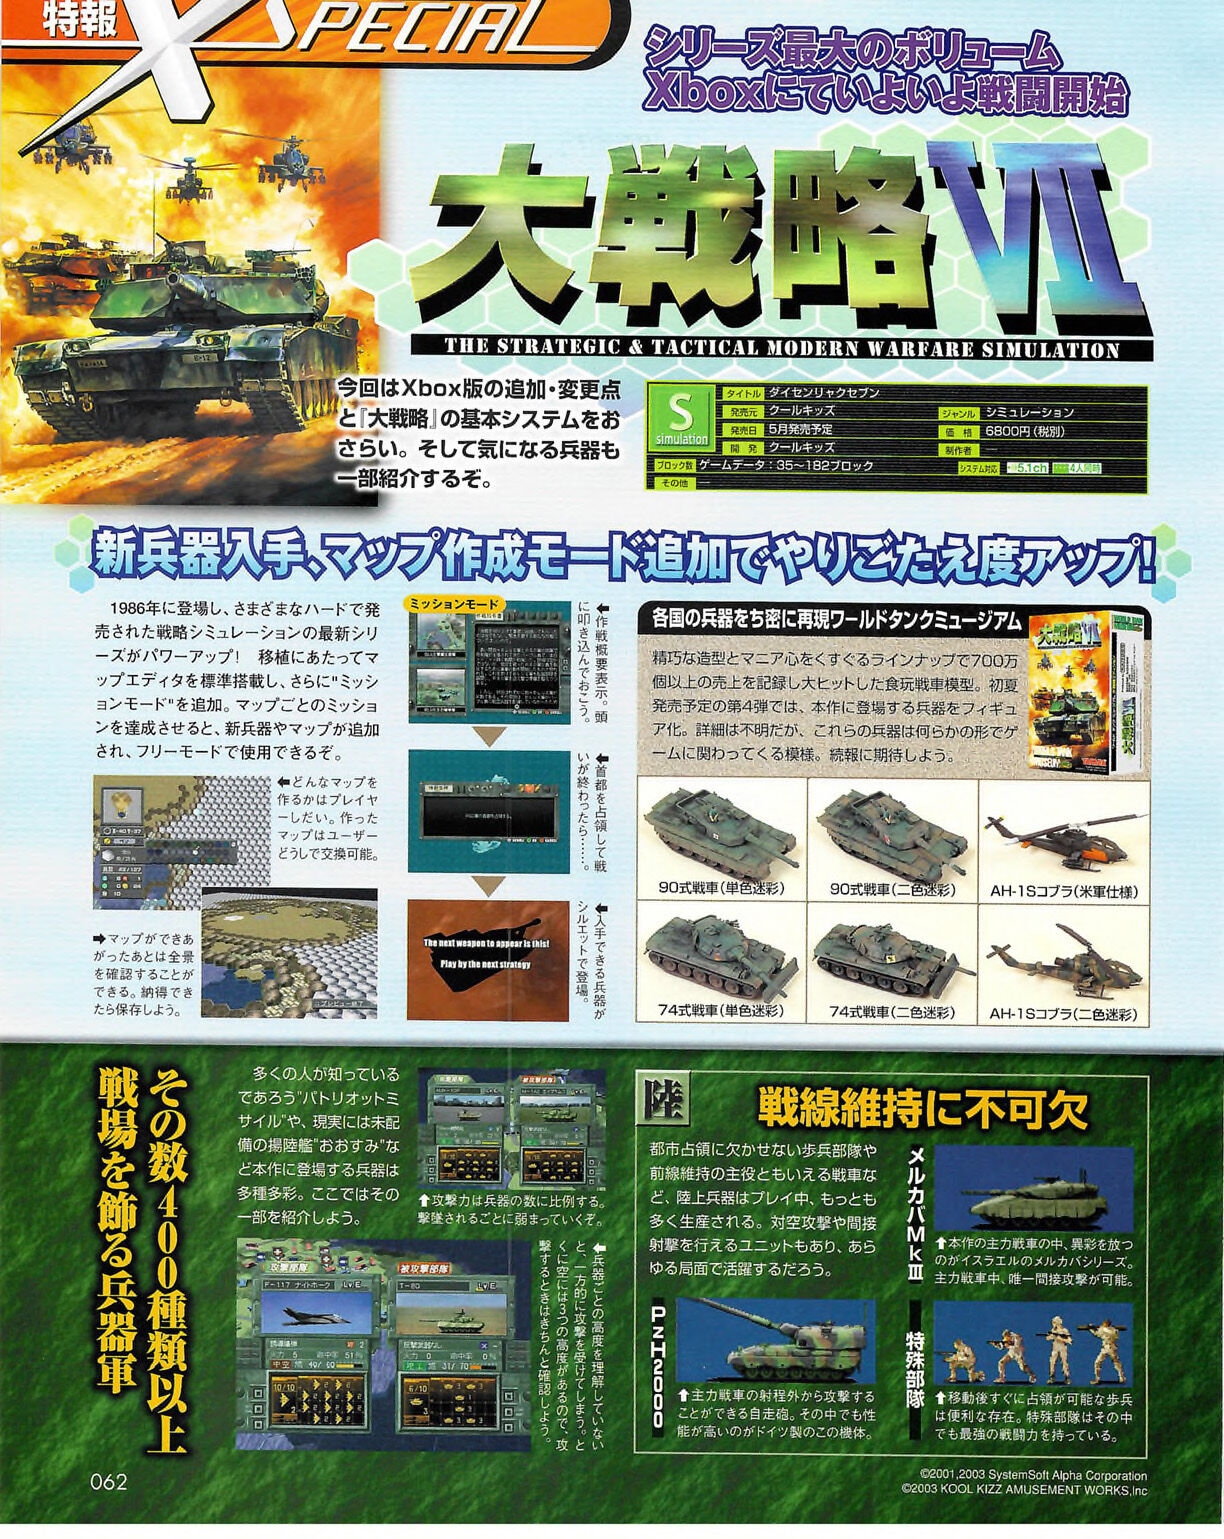 Famitsu_Xbox_2003-04_jp2 61